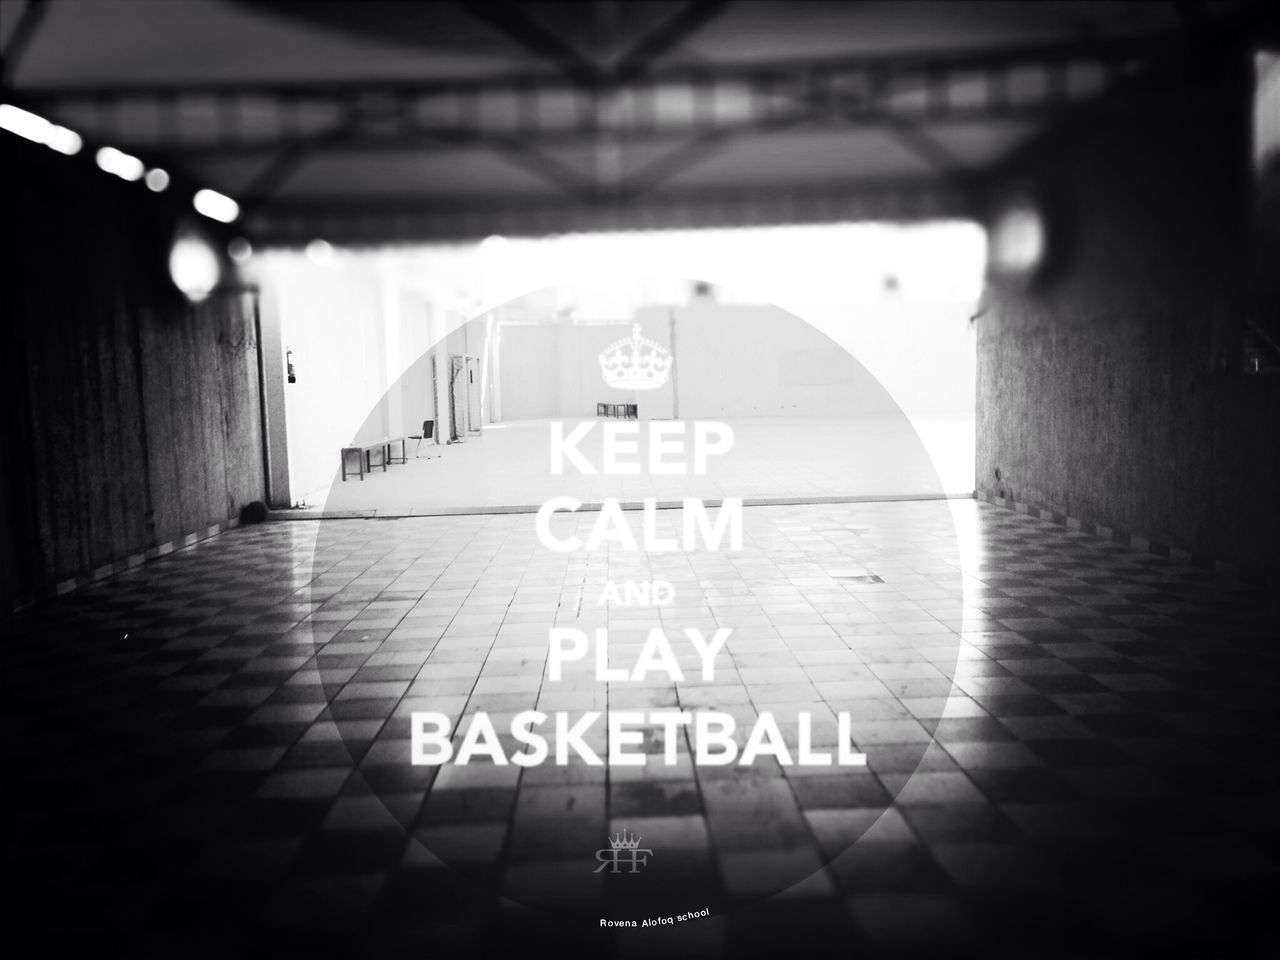 Basketball is life